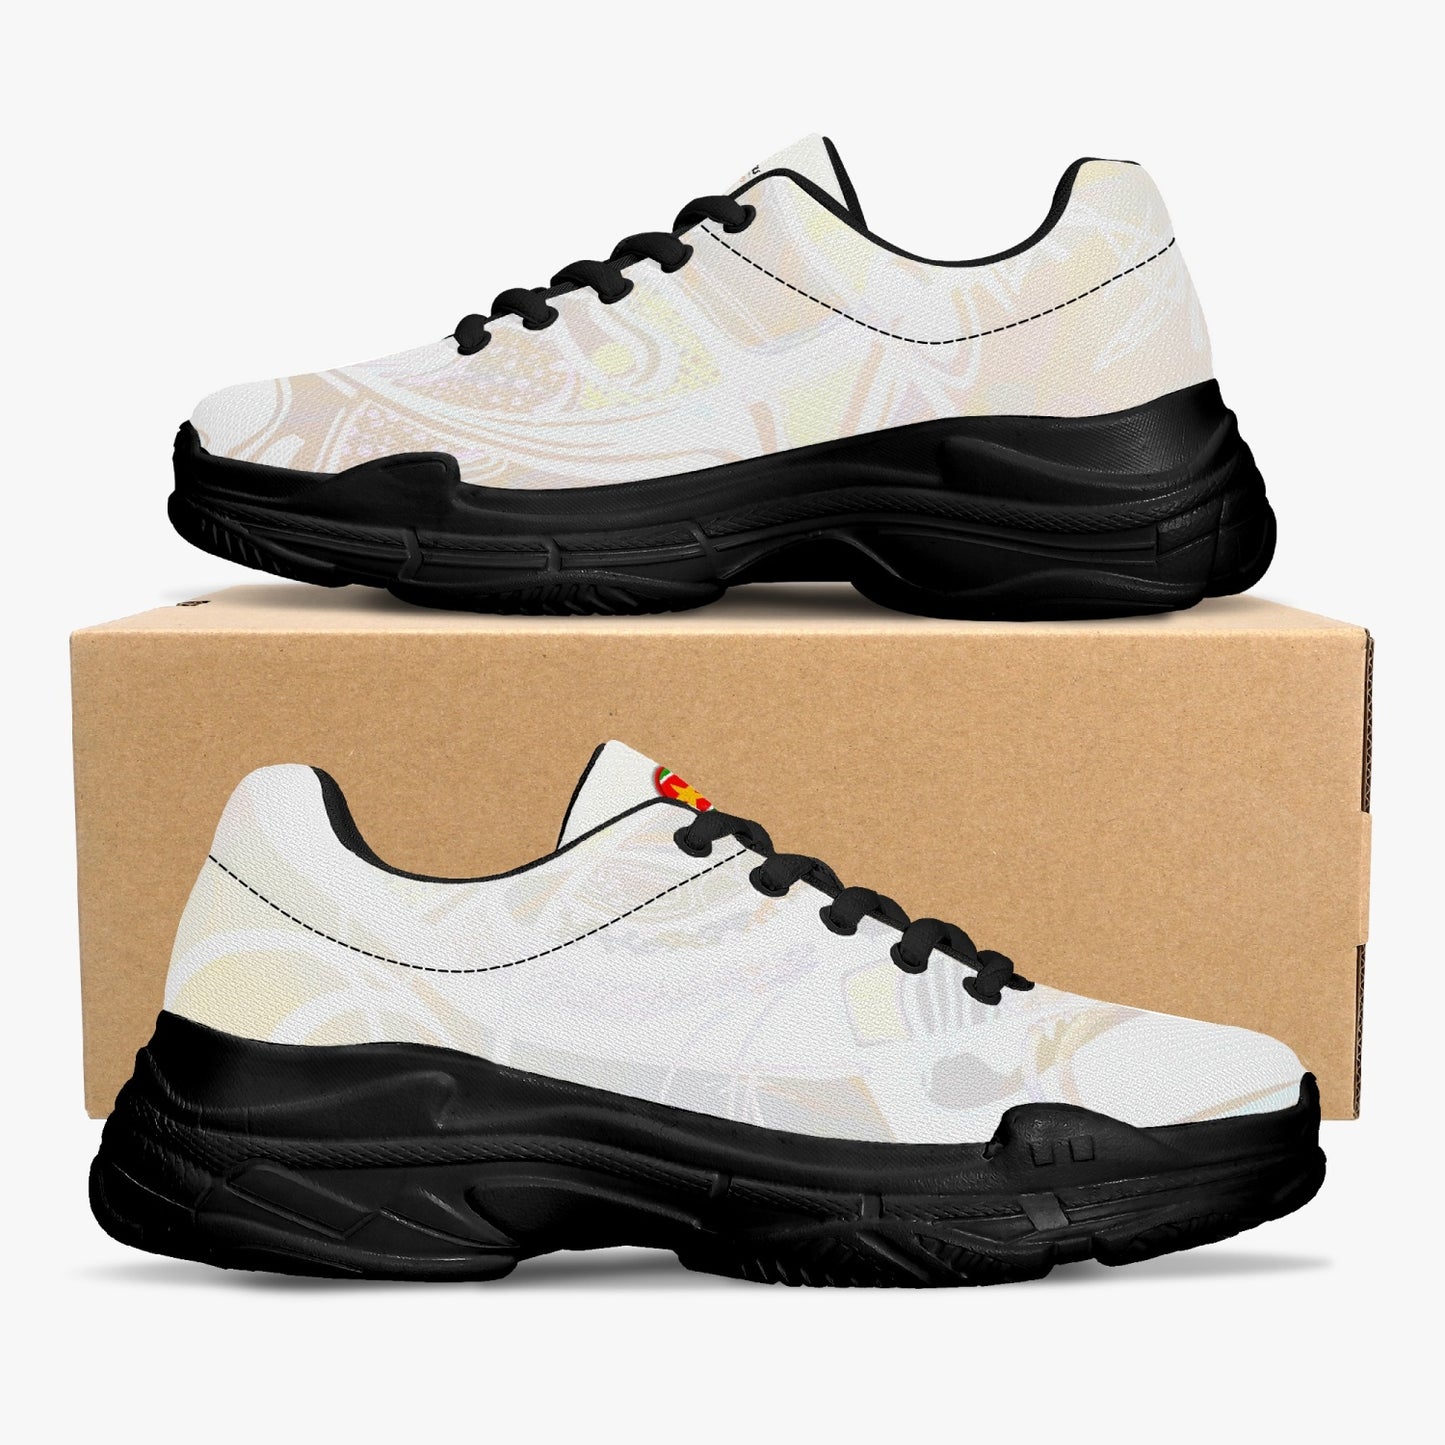 Sneakers "crema" unisex (BALNC / NERO)